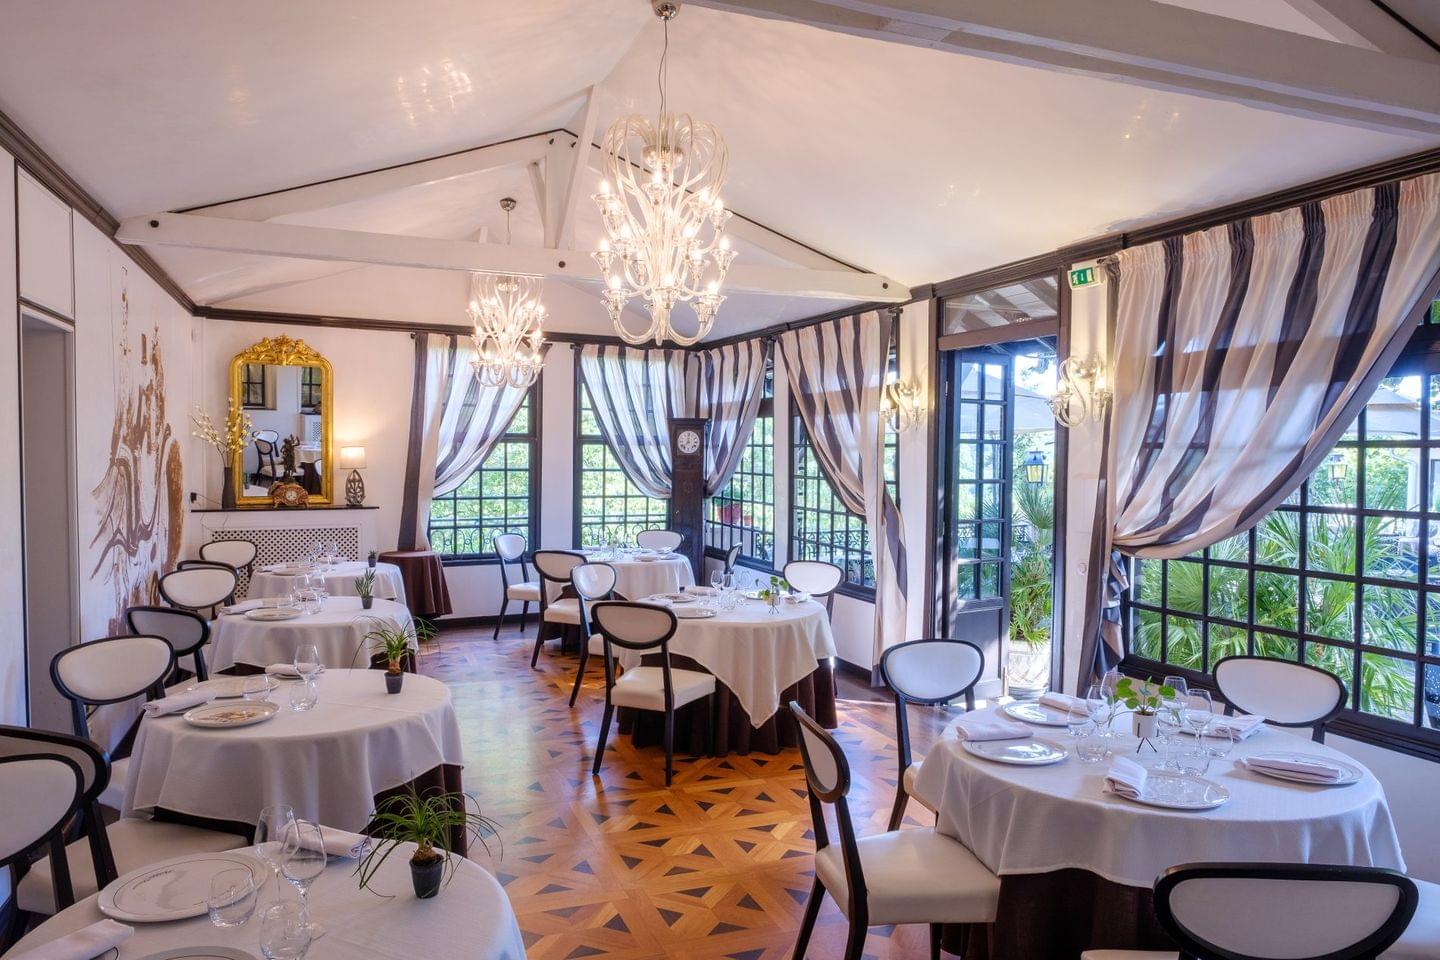 Restaurants in Versailles